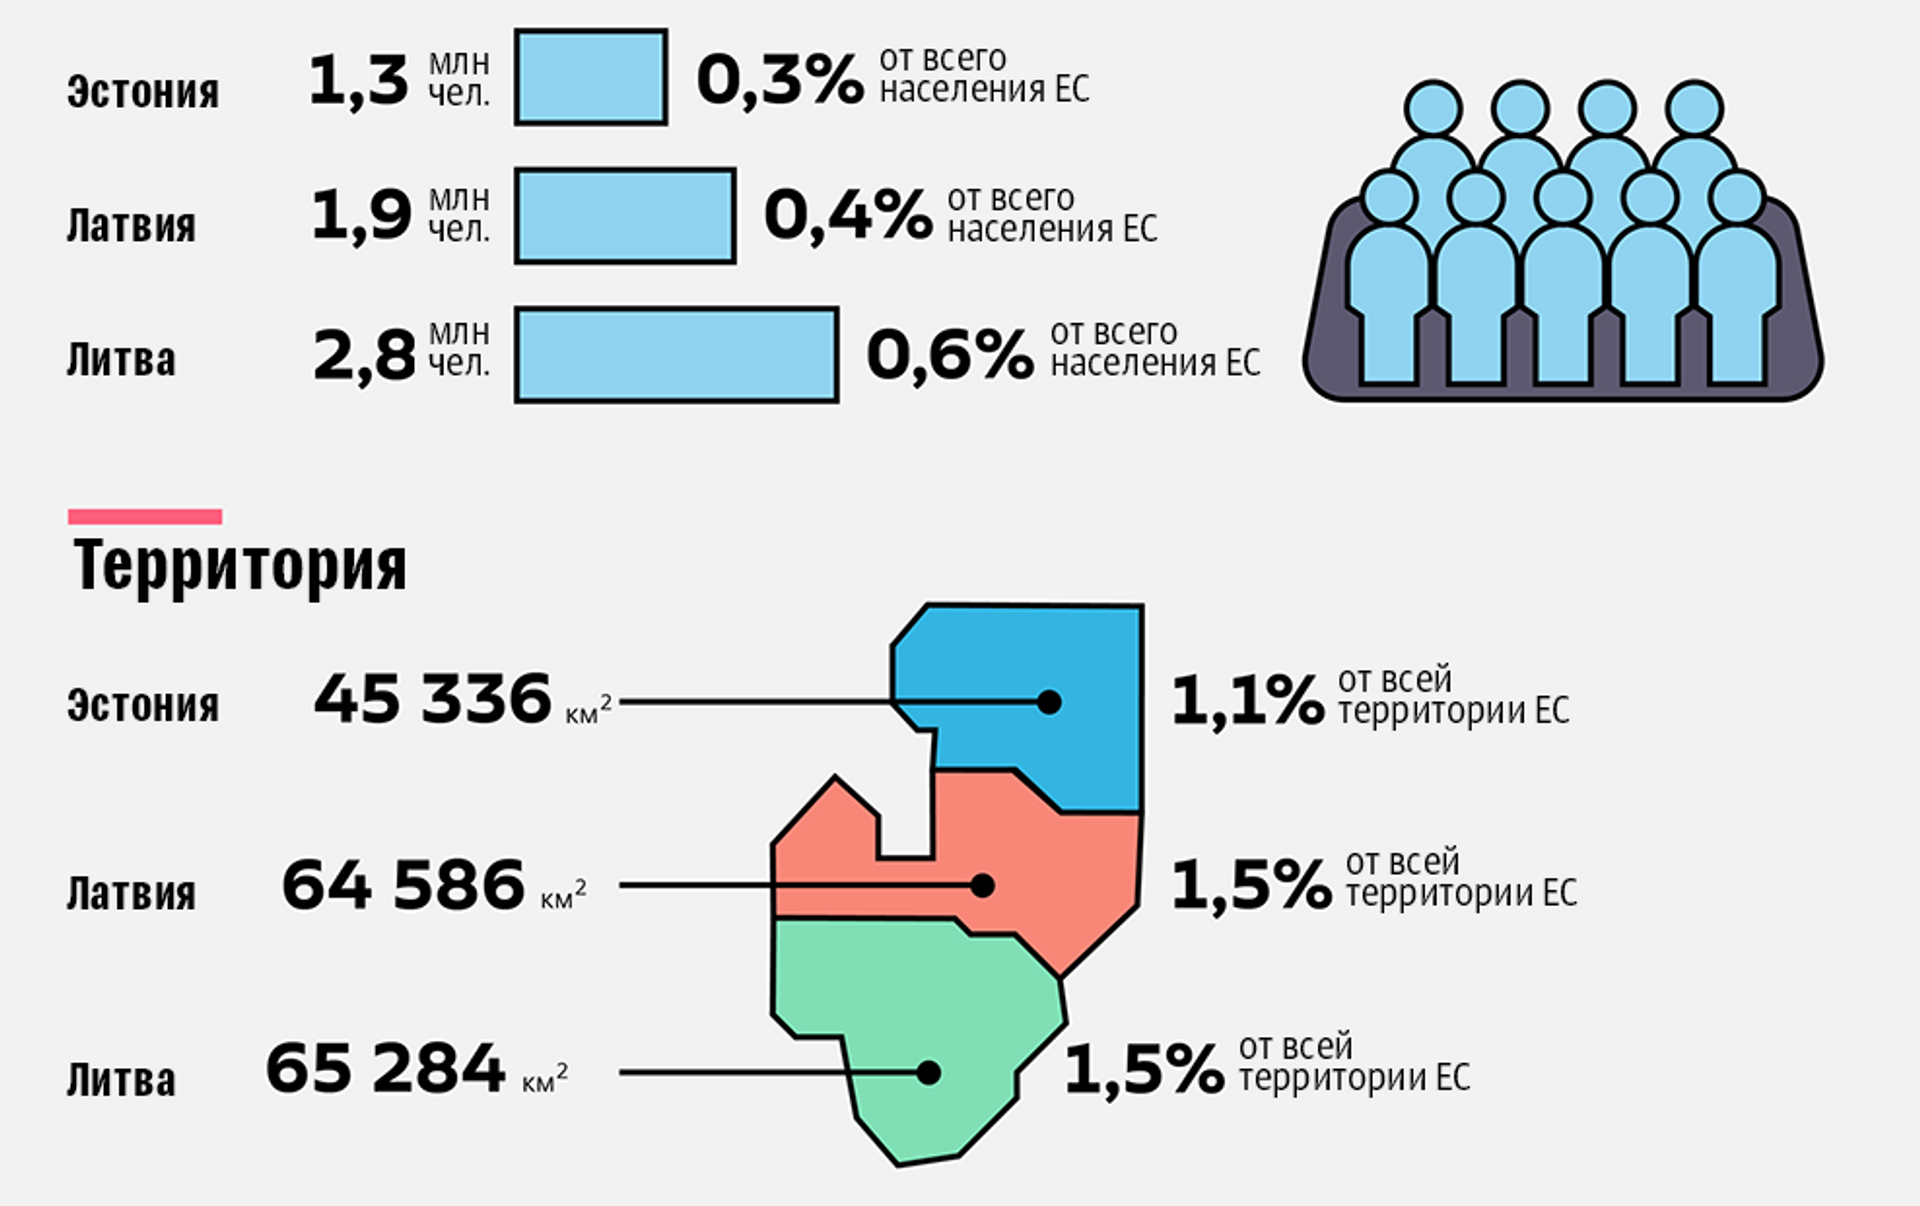 Население прибалтики по странам. ЕС В цифрах. Страны Балтии факты. Евросоюз в цифрах. ЕС В цифрах 2021.